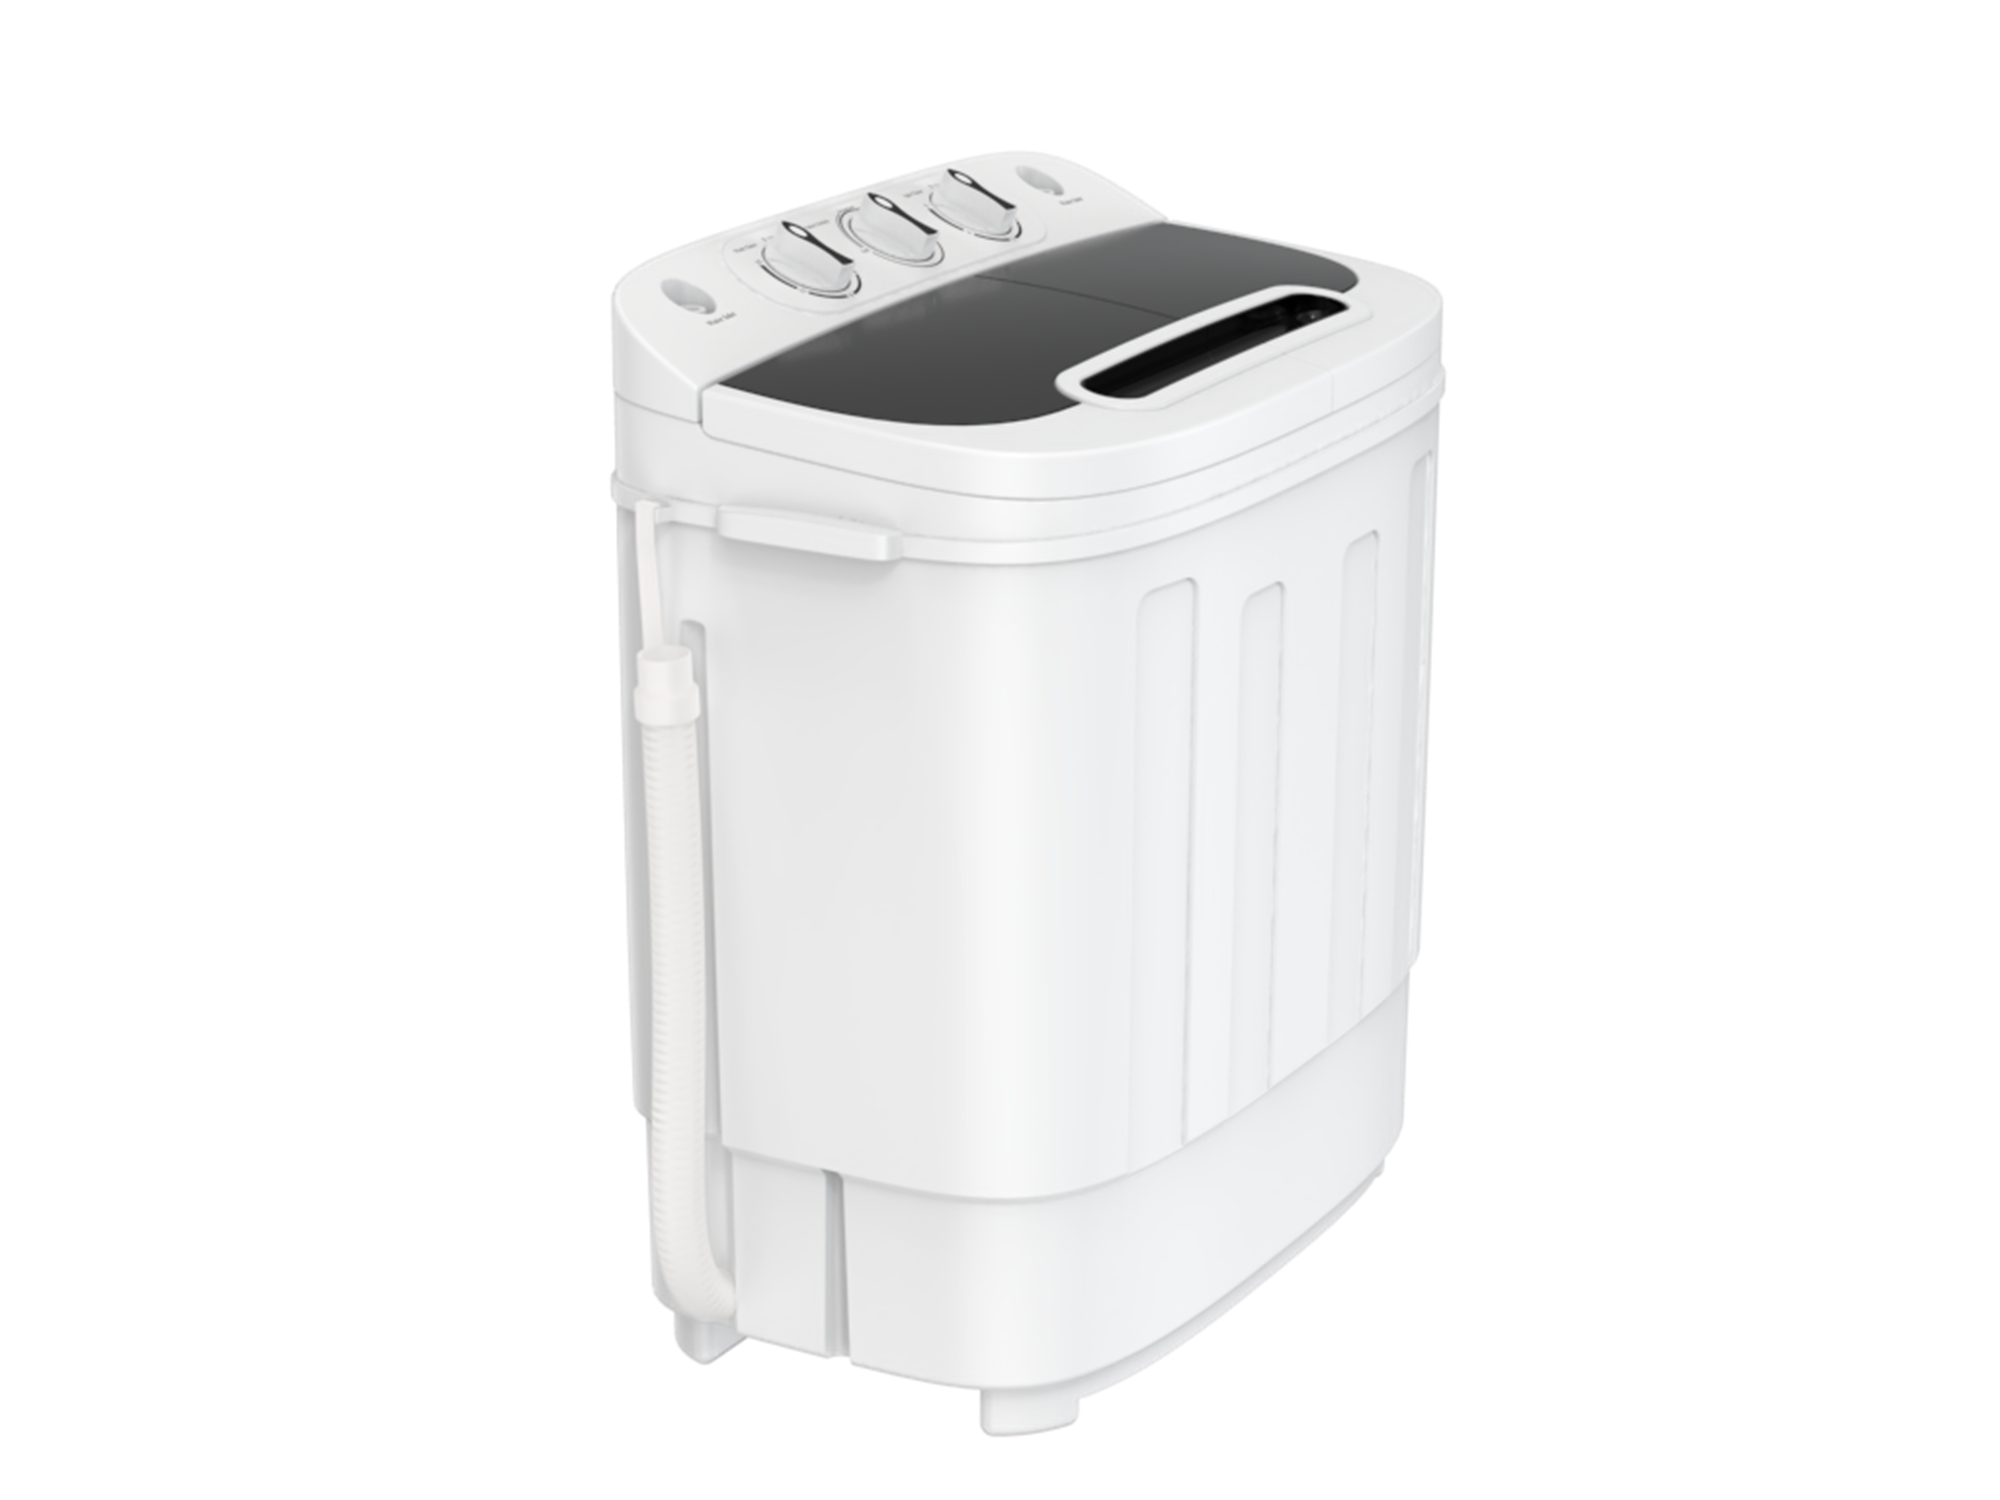 ZENY H01-1568A 13lbs Portable Mini Washing Machine - White